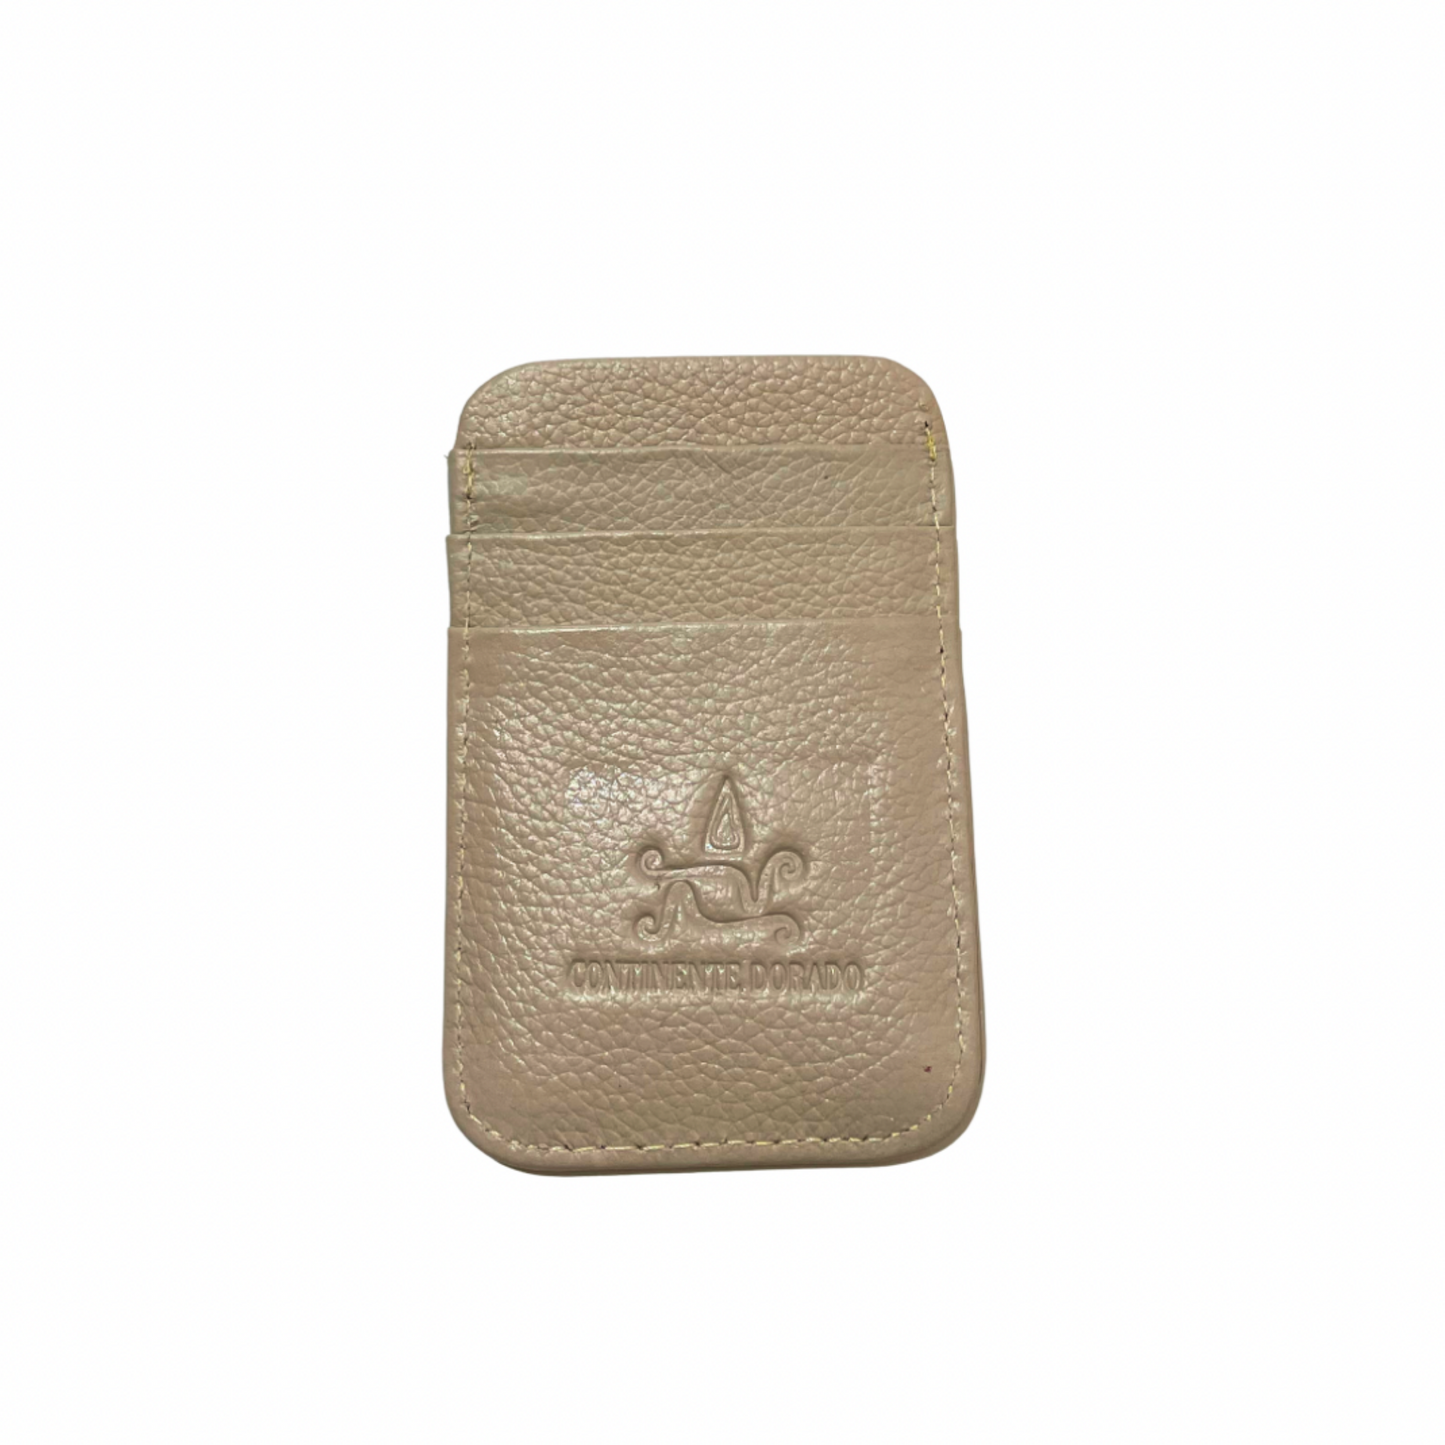 Continente Dorado Genuine Leather Card Holder Cream Continente Dorado